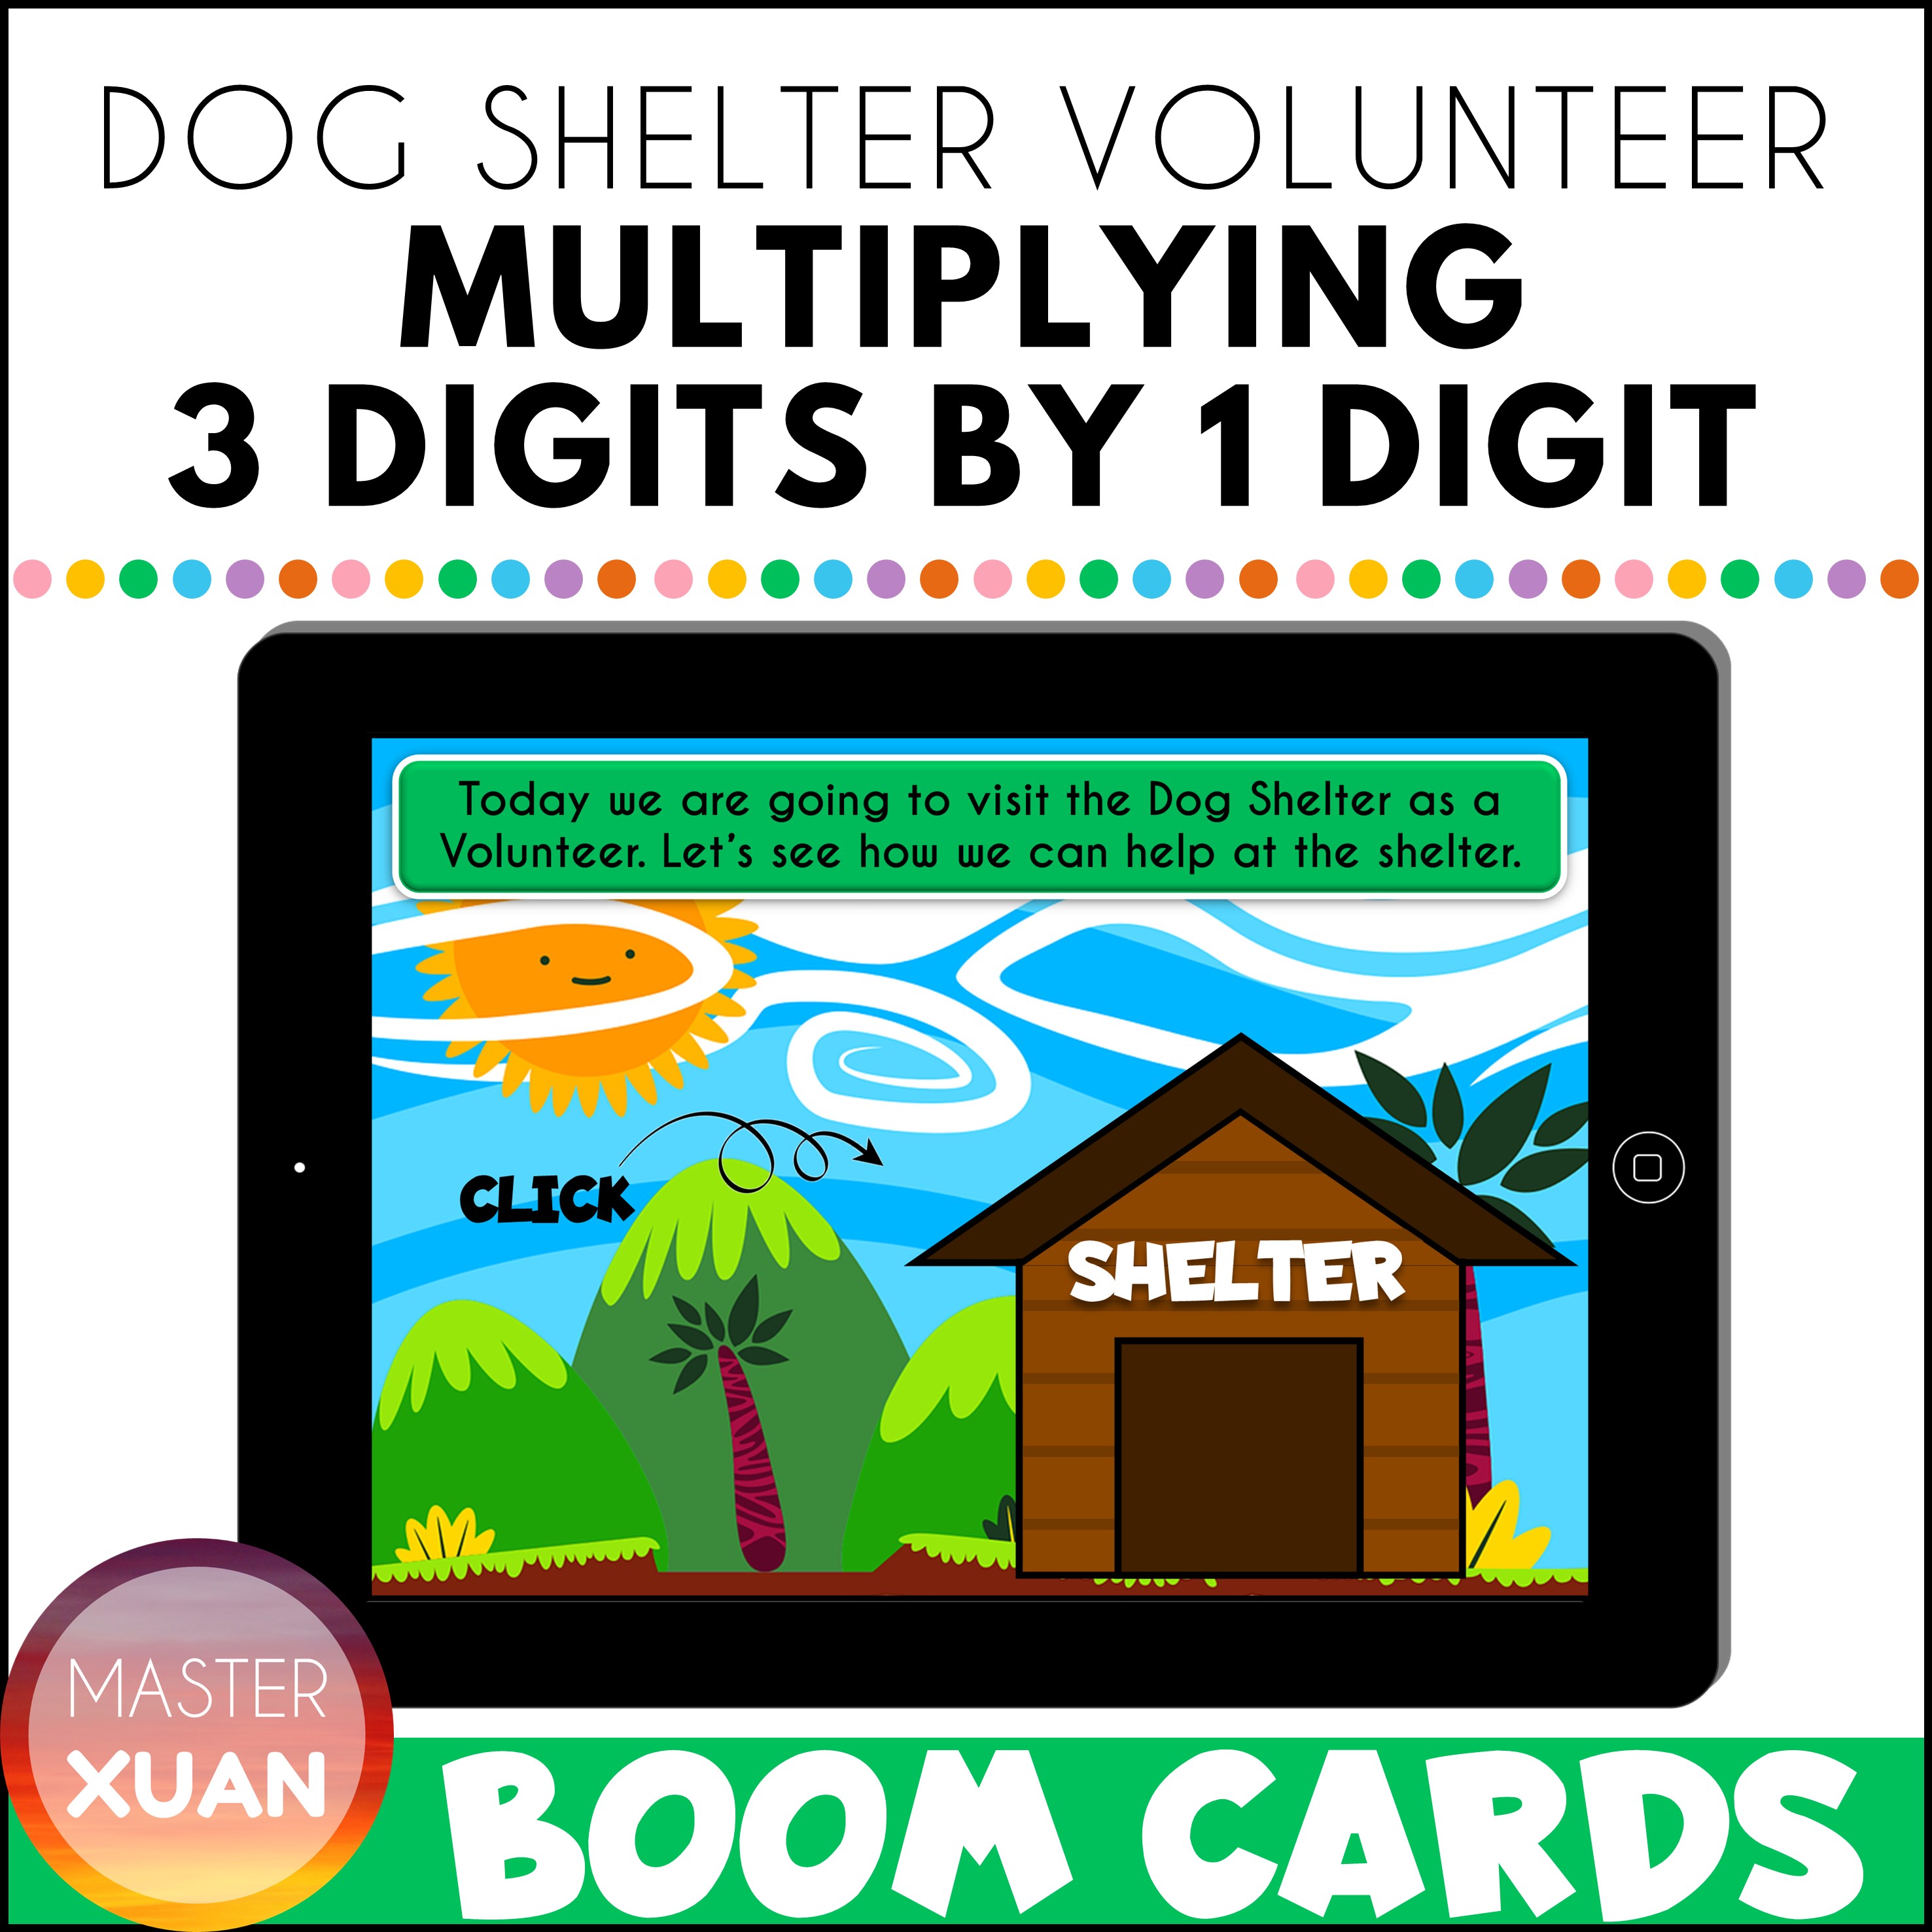 Dog shelter volunteer multiplying 3 digits by 1 digit cover